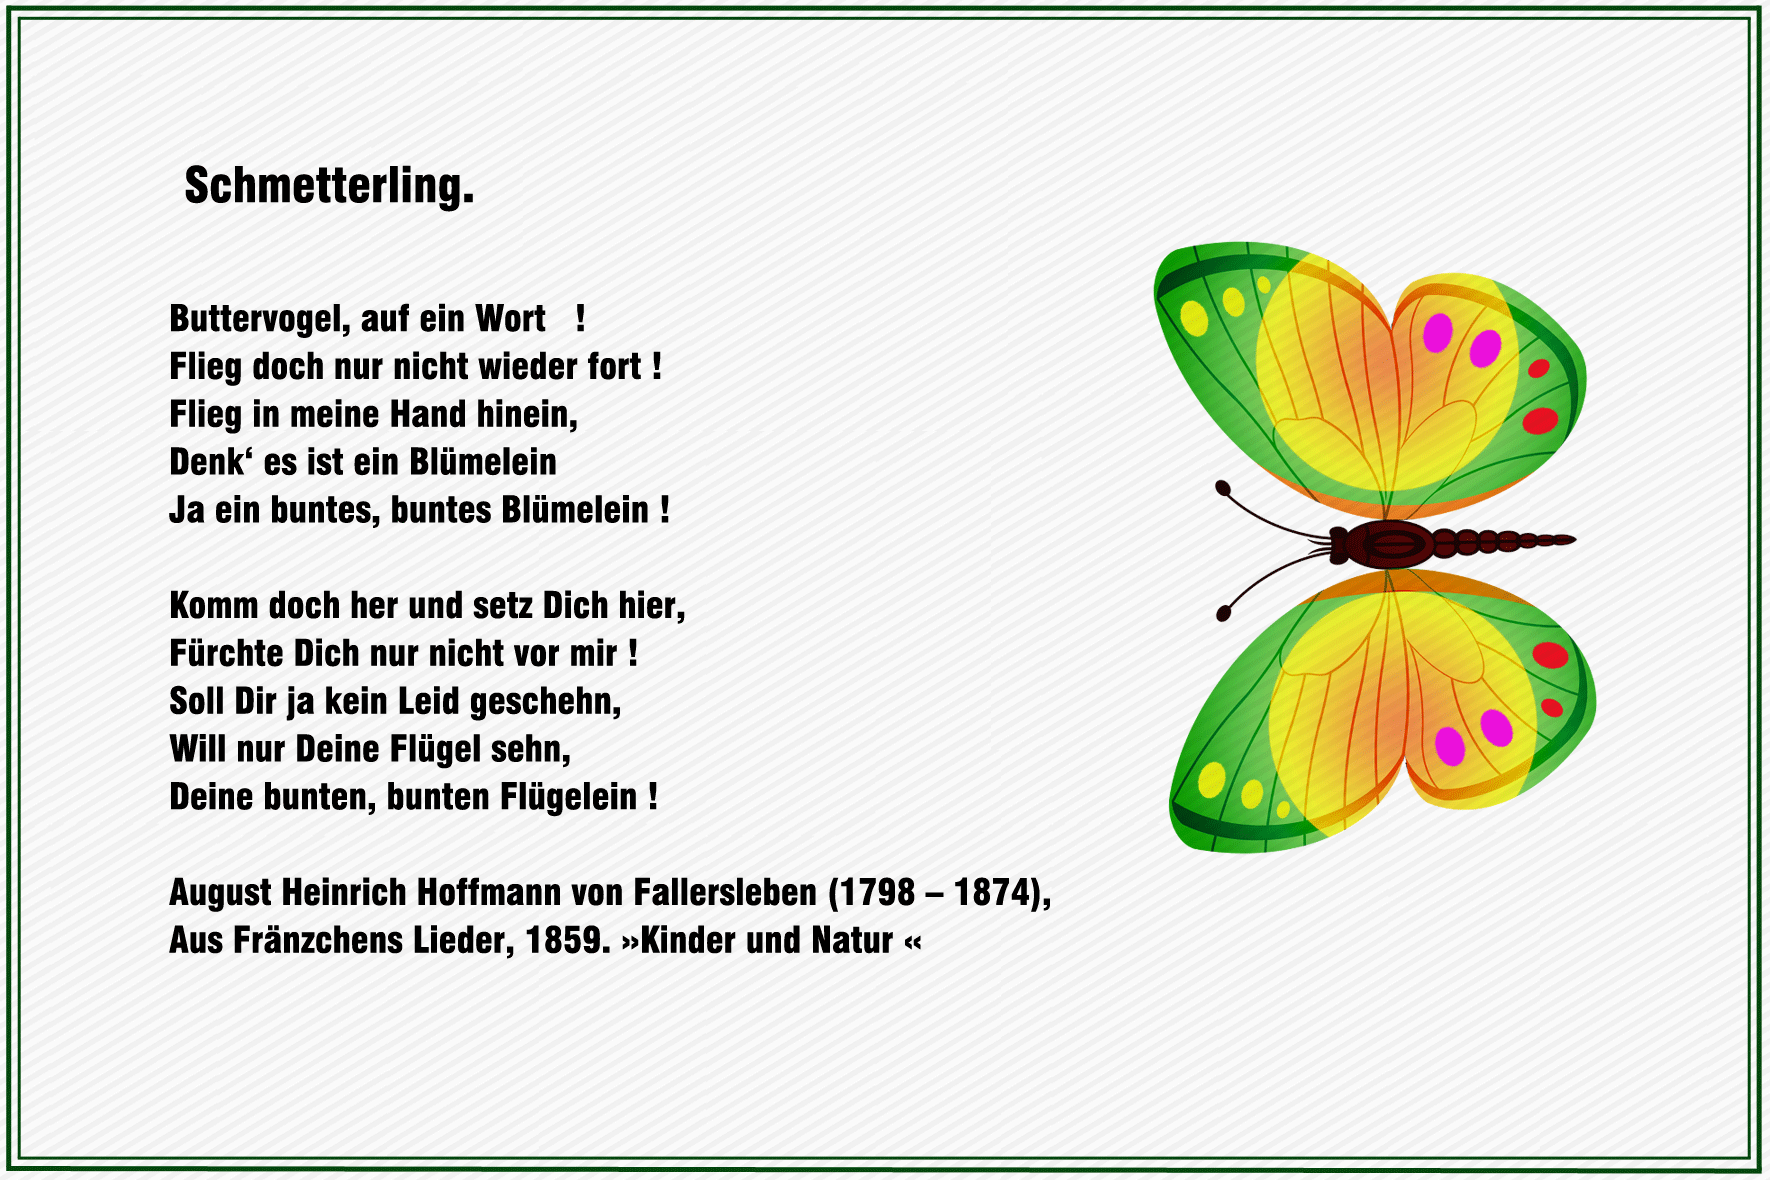 Schmetterling - August Heinrich Hoffmann von Fallersleben 